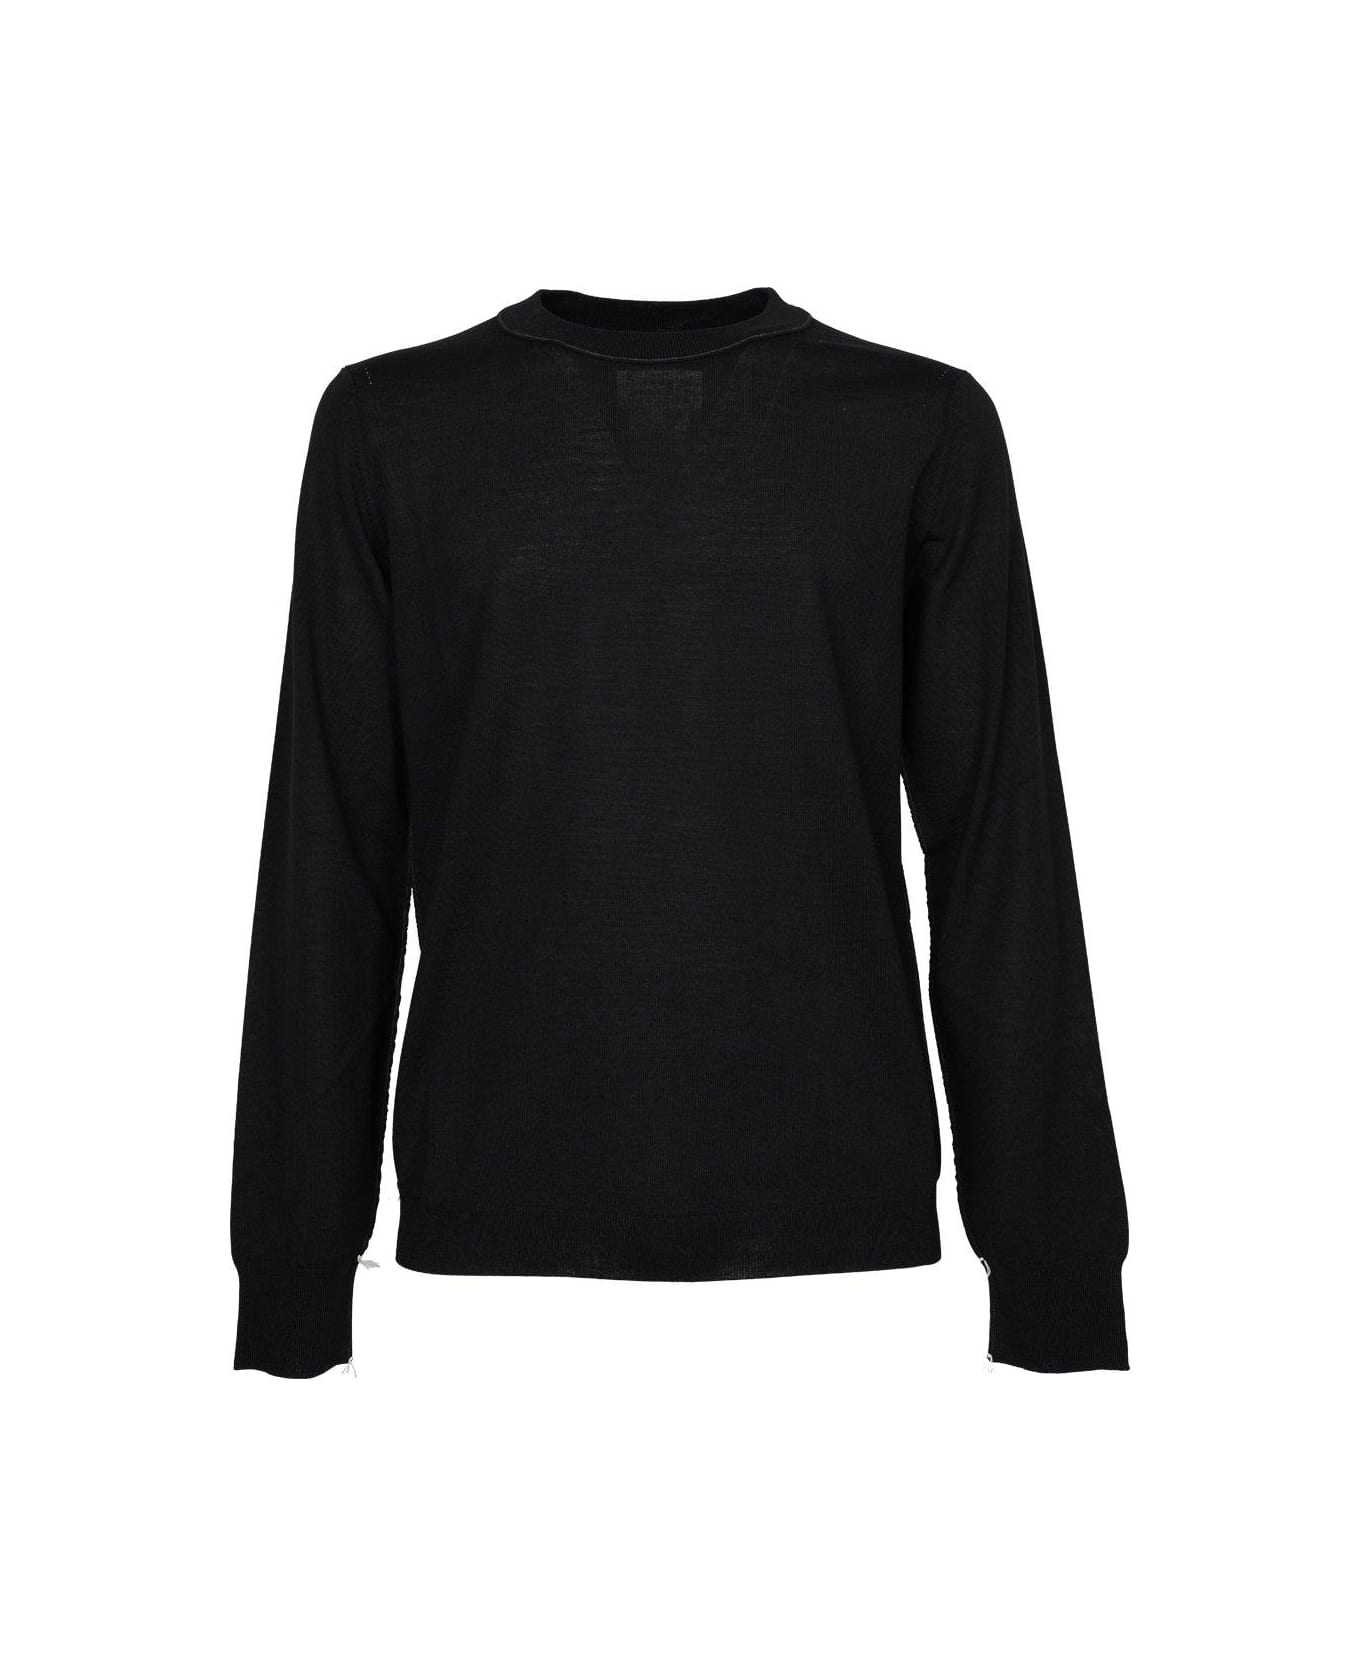 Maison Margiela Crewneck Sweater - black ニットウェア